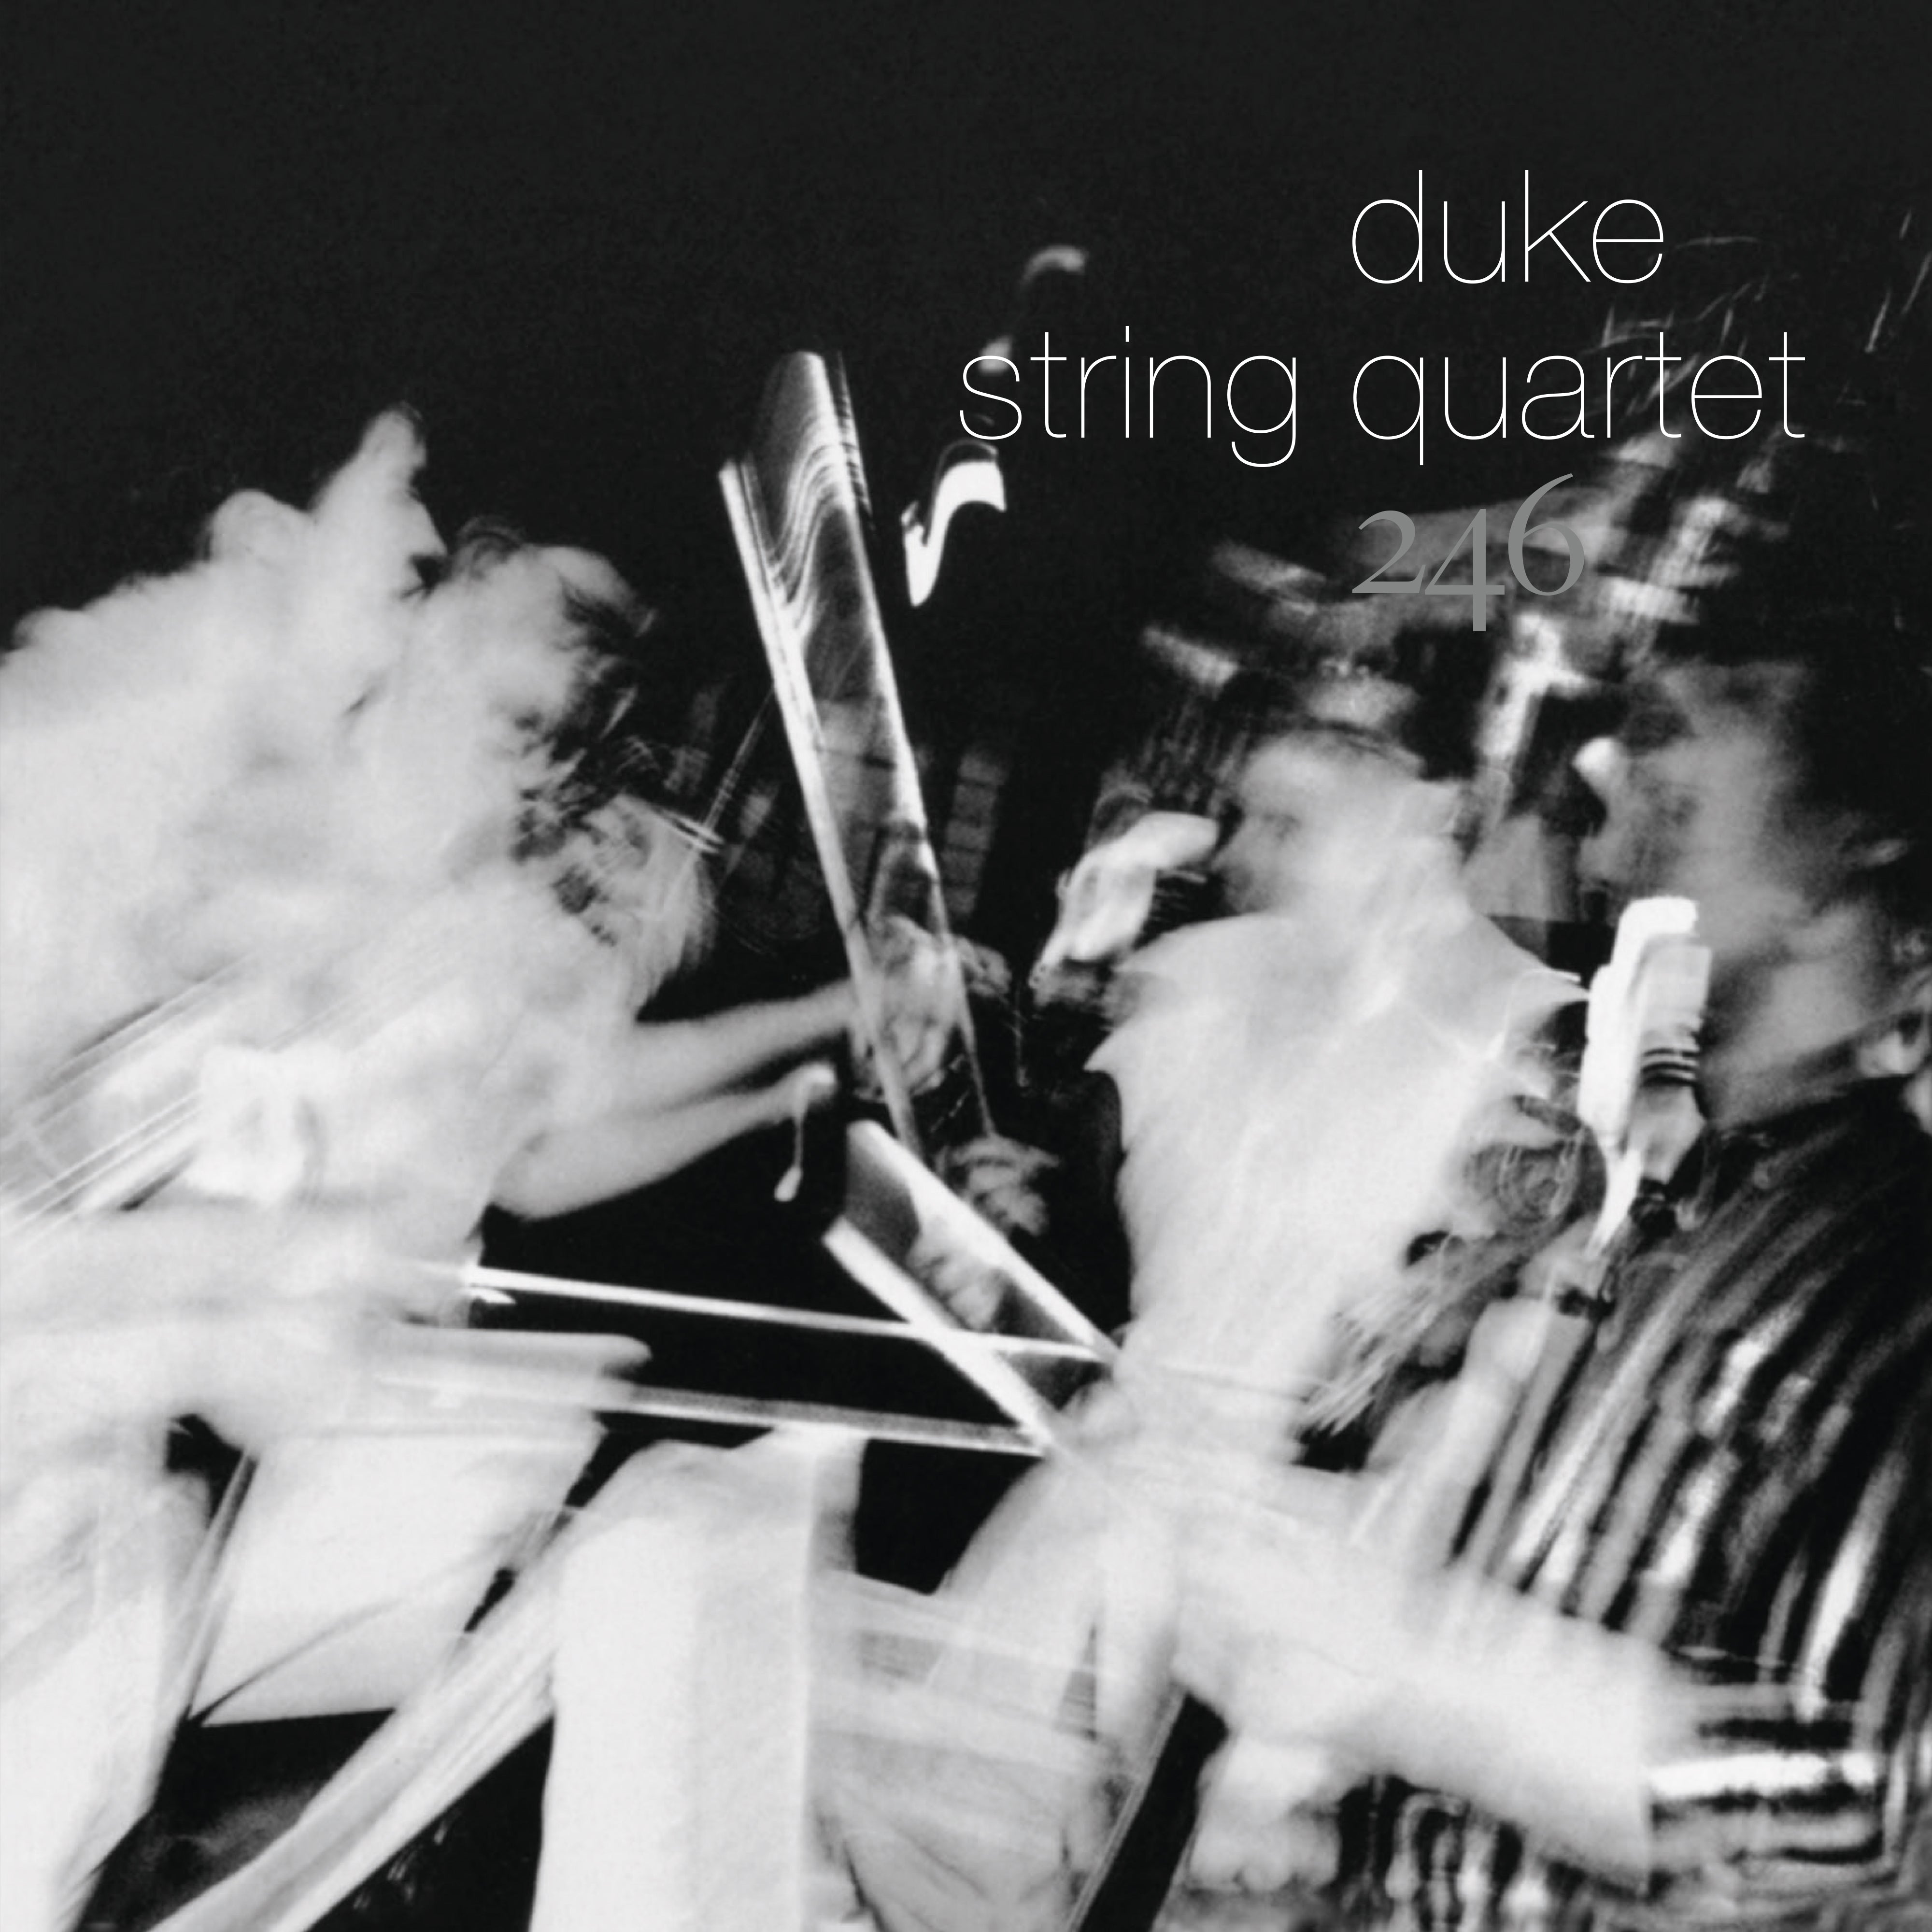 Duke String Quartet - 246